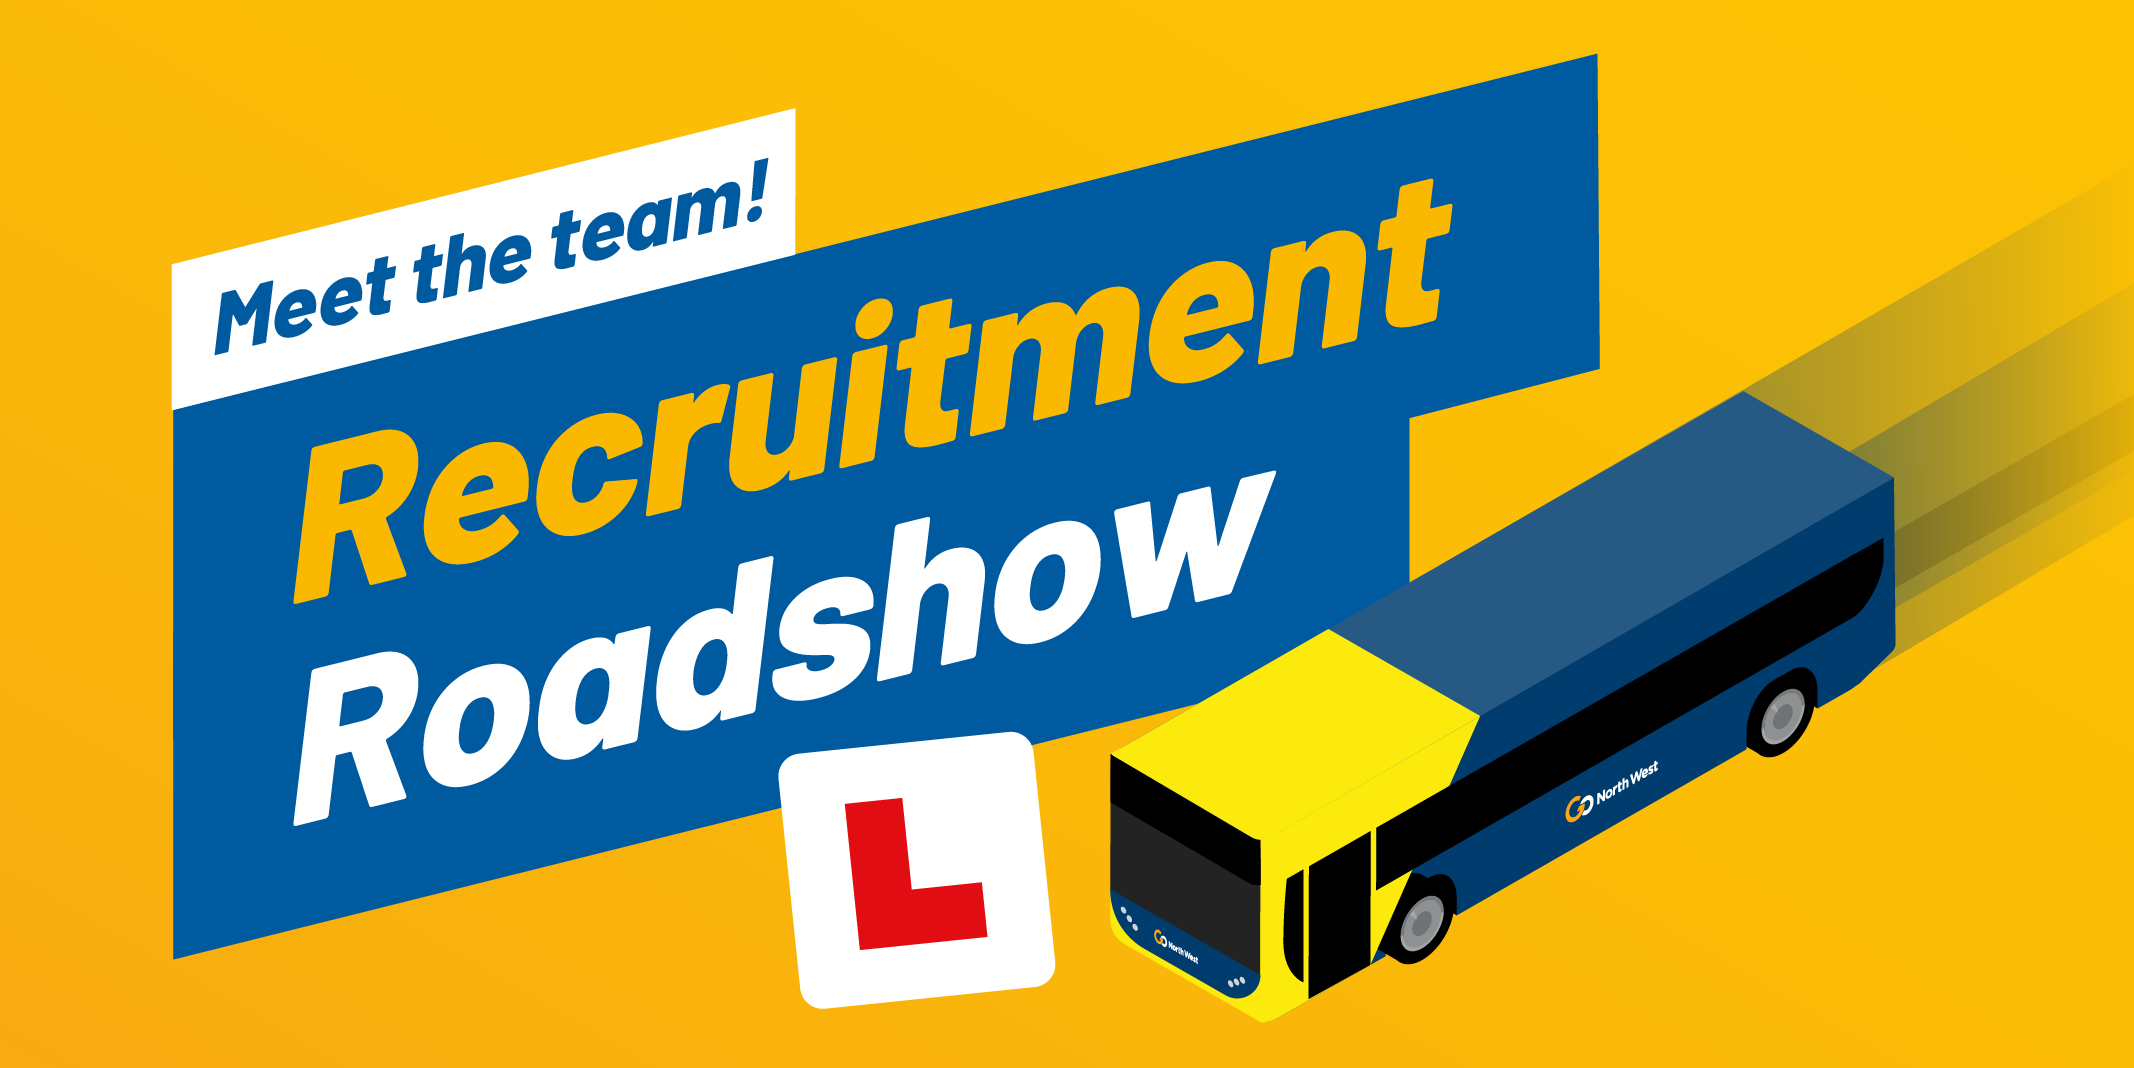 Recruitment Roadshow